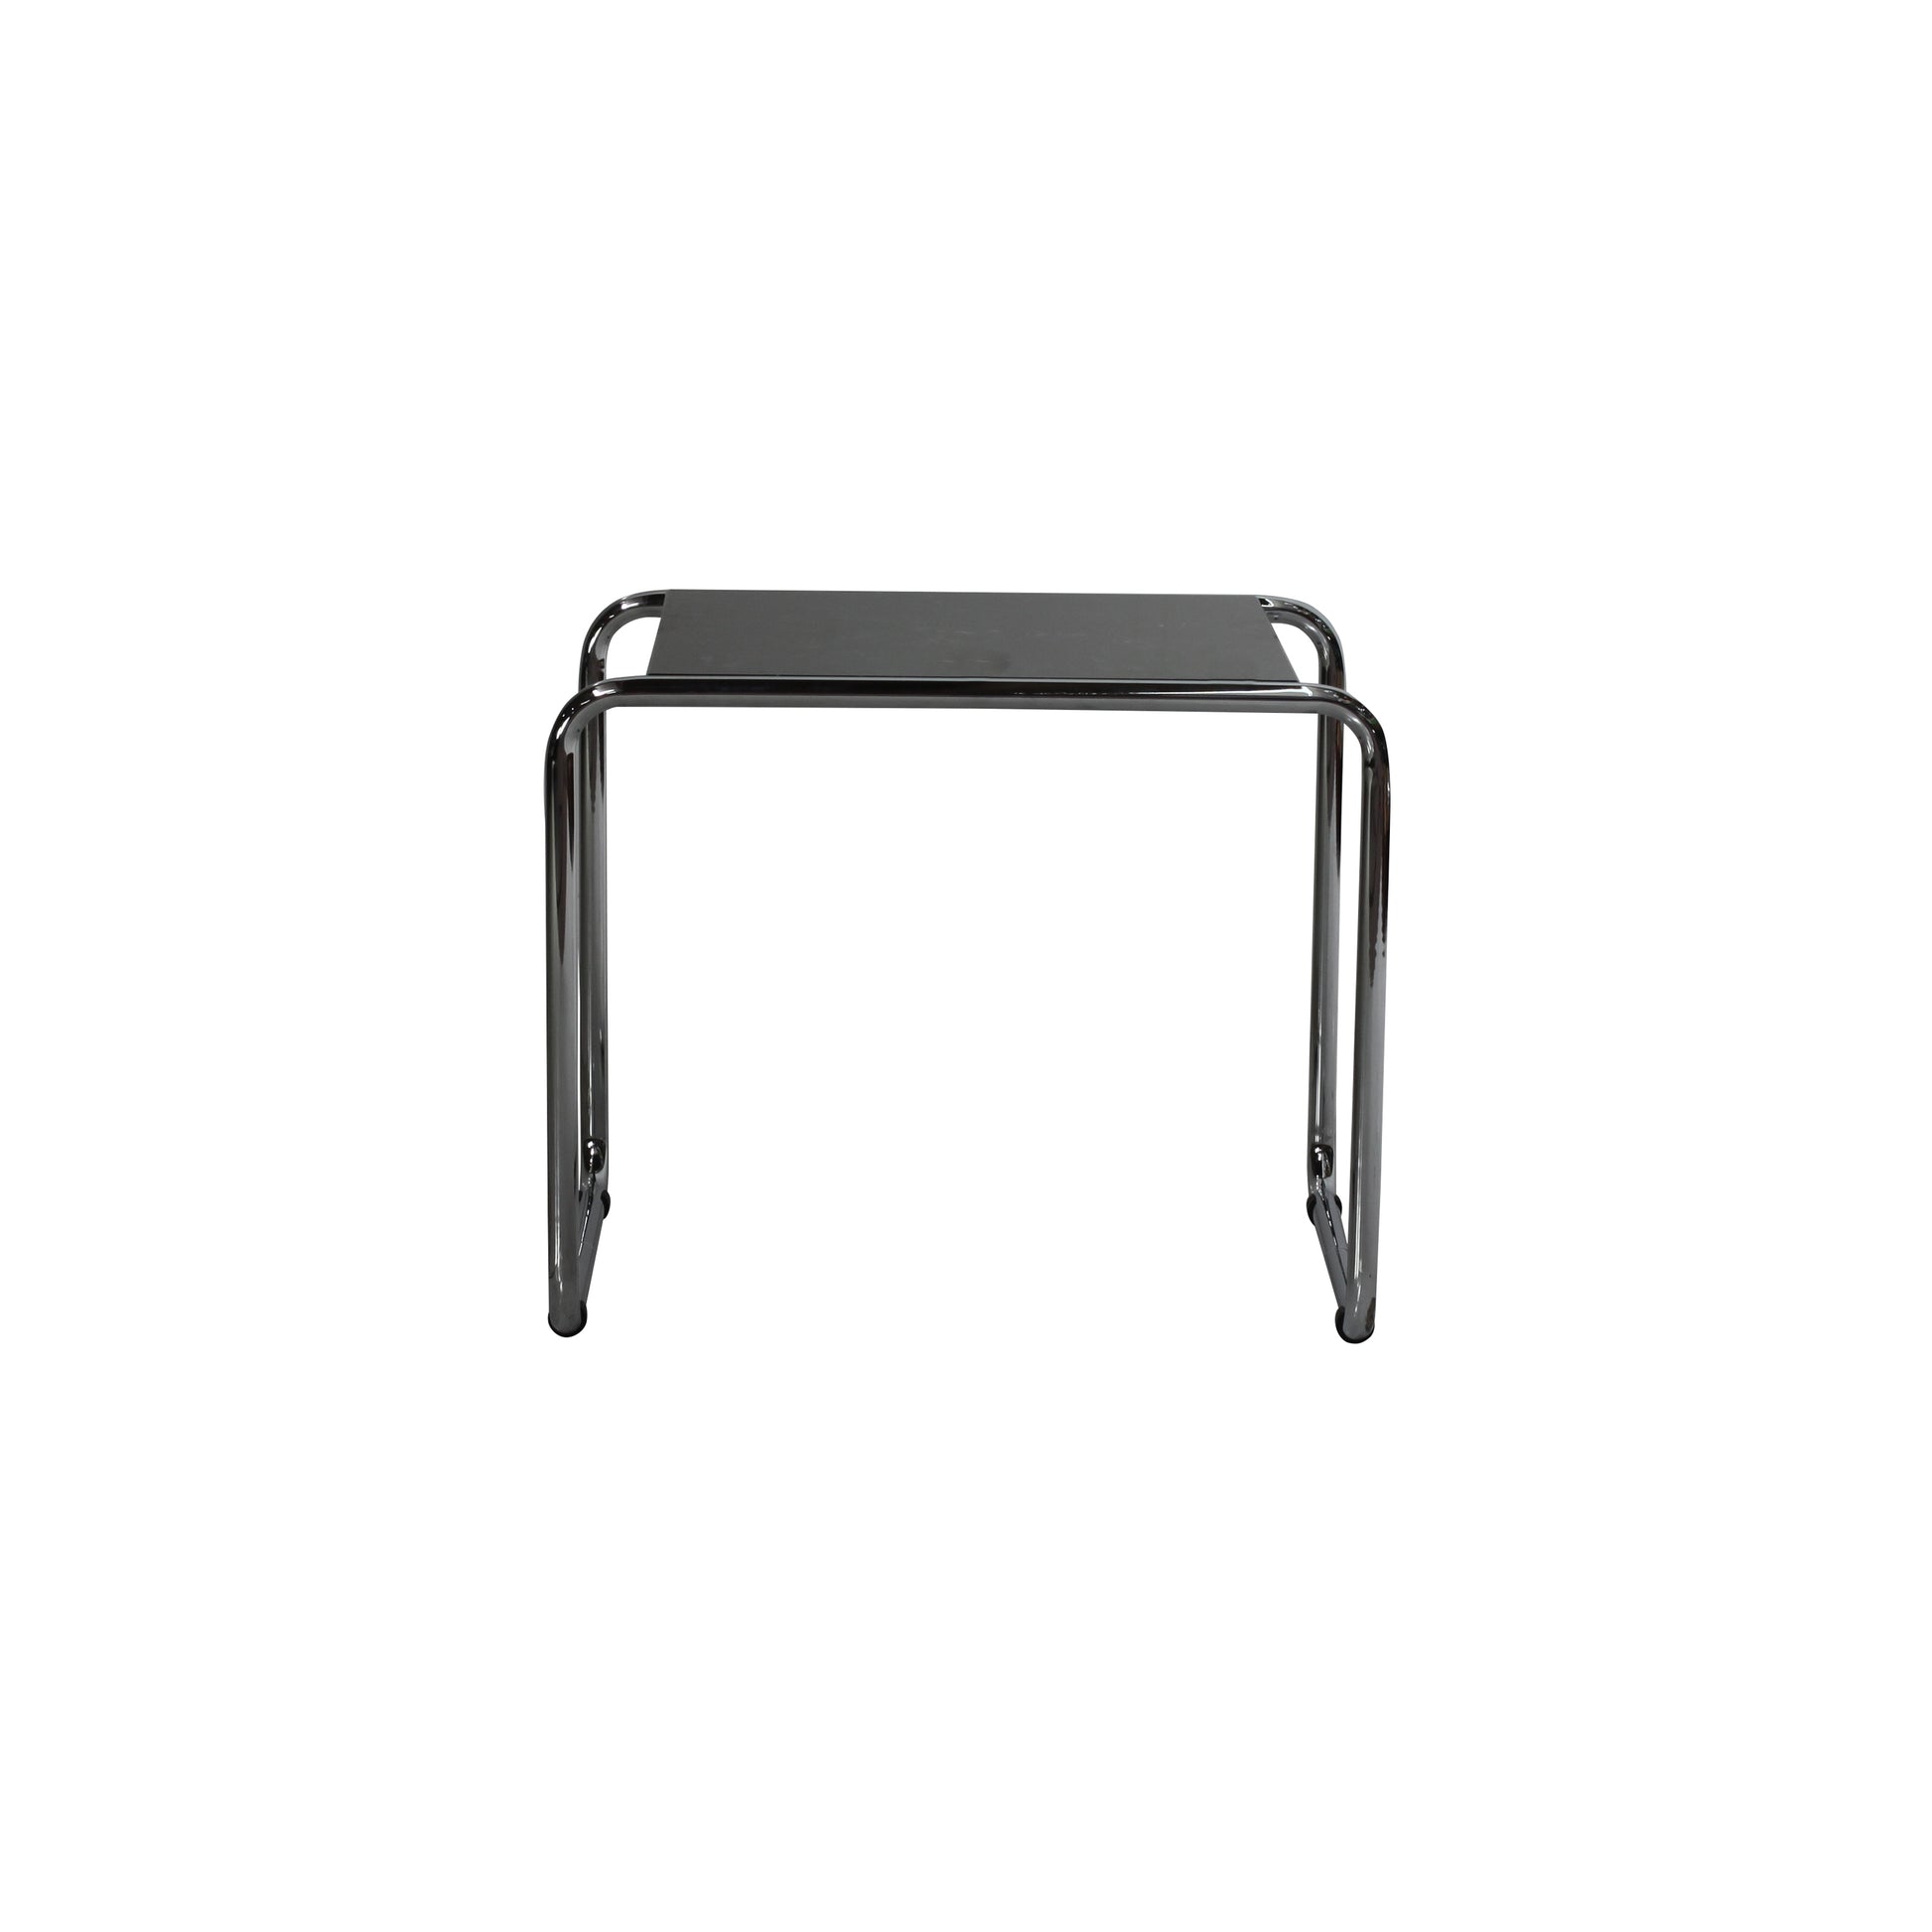 Laccio table style | Black | Front 